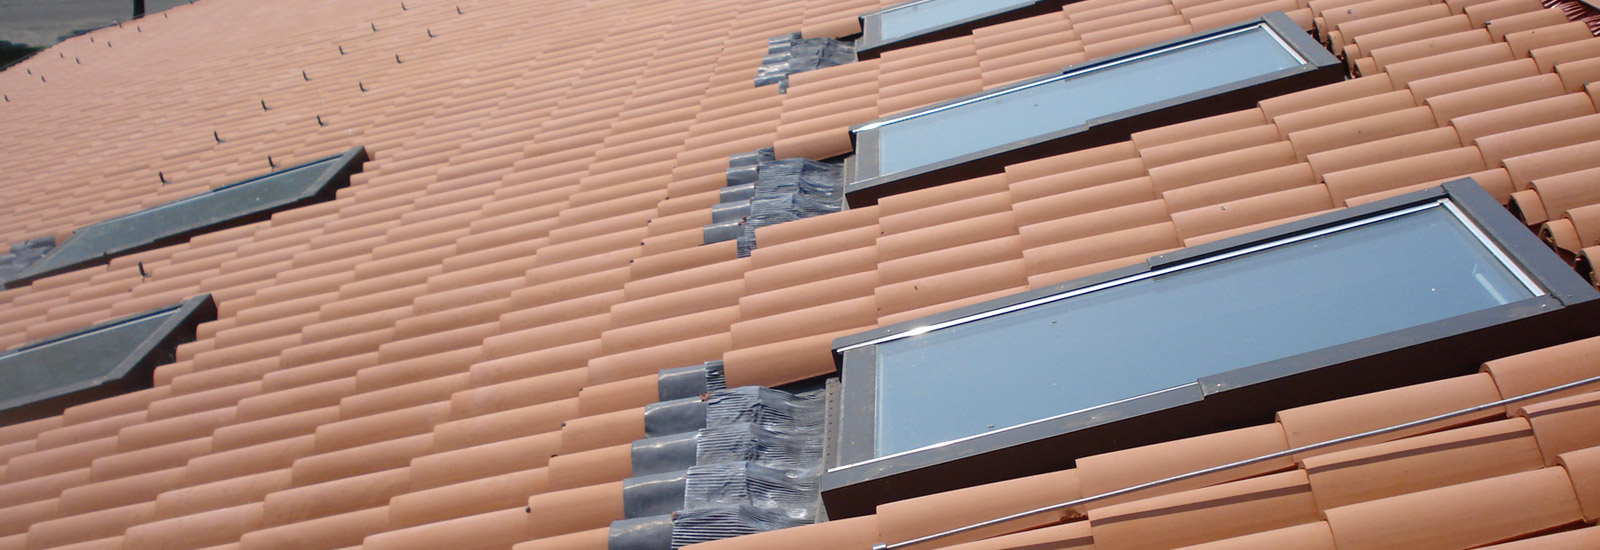 Realizzazione coperture edili bergamo tetti, coperture civili e realizzazione coperture industriali